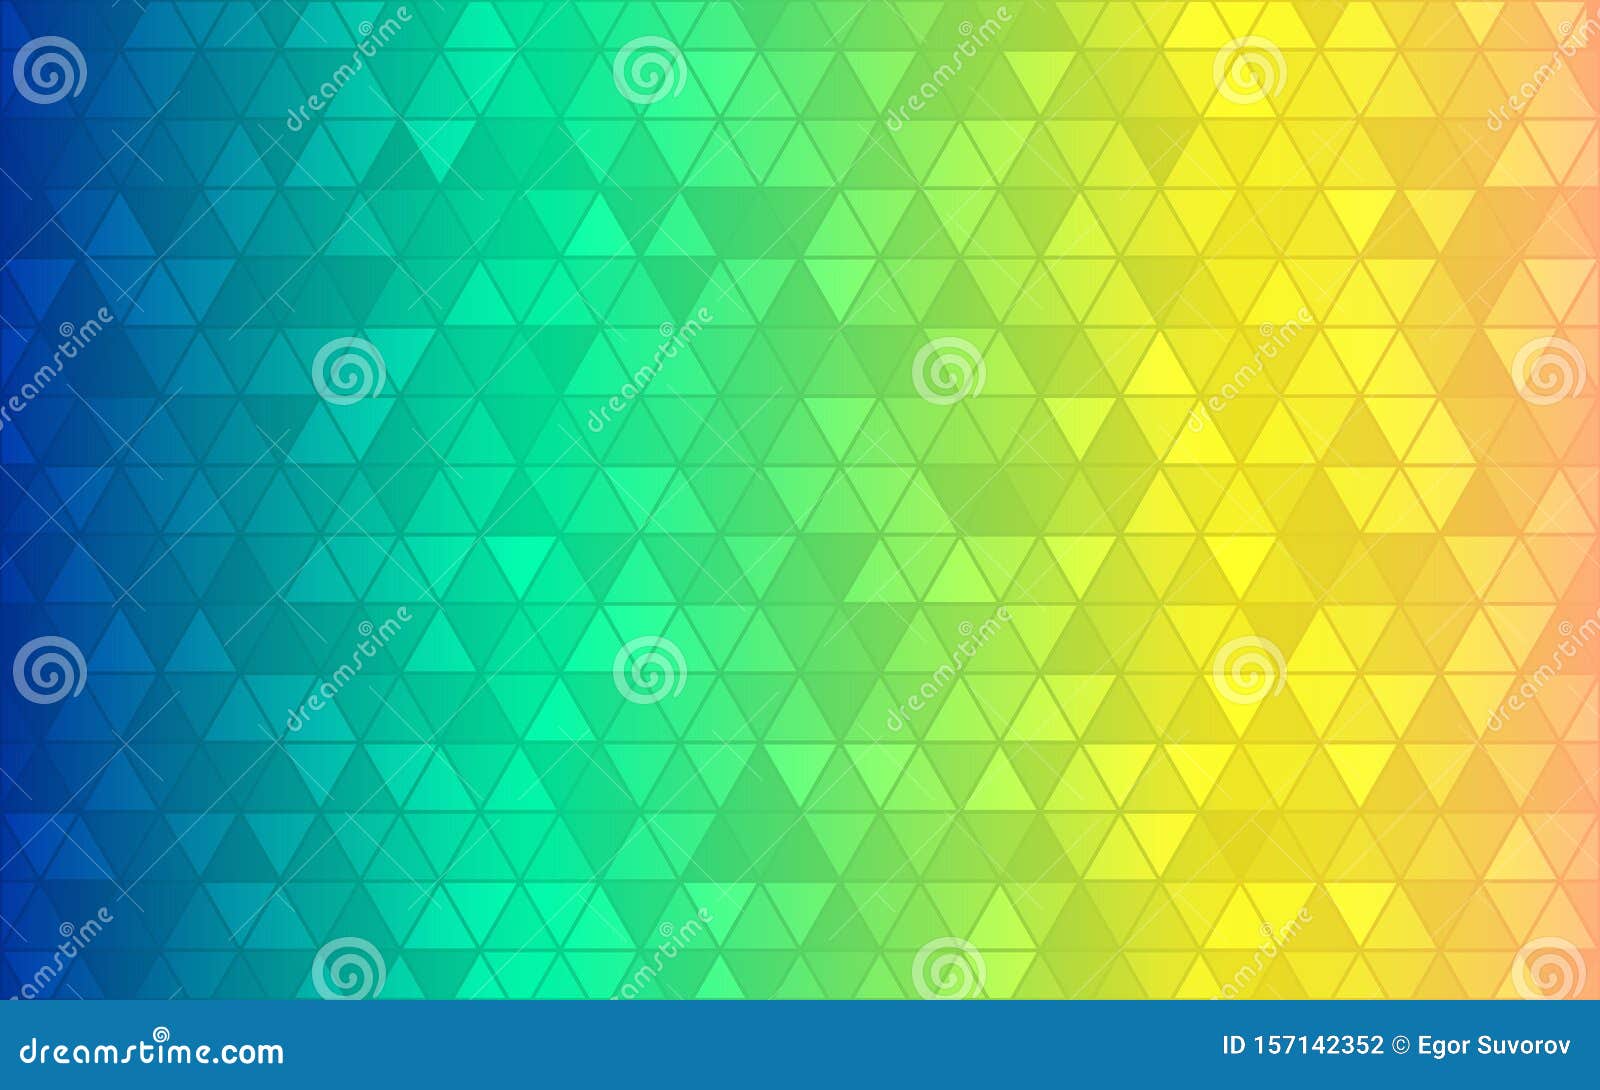 Fondo del triÃ¡ngulo abstracto. Gradiente amarillo verde azul. Fondo geomÃ©trico de color brillante. DiseÃ±o grÃ¡fico moderno